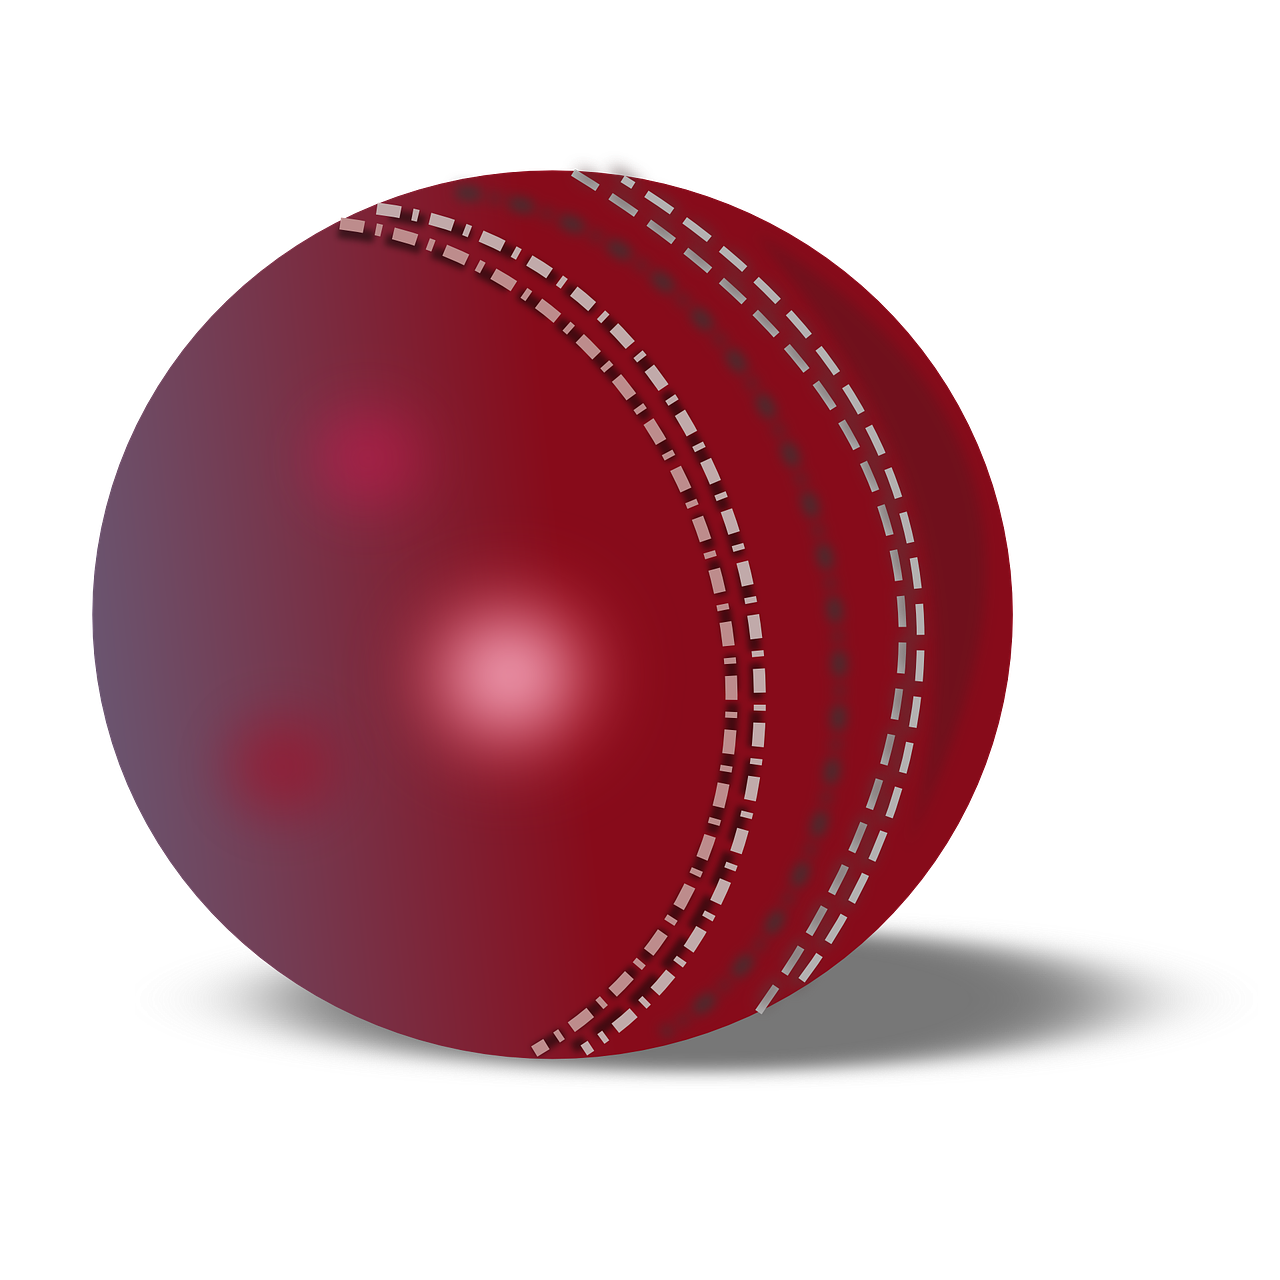 cricket ball cricket ball free photo